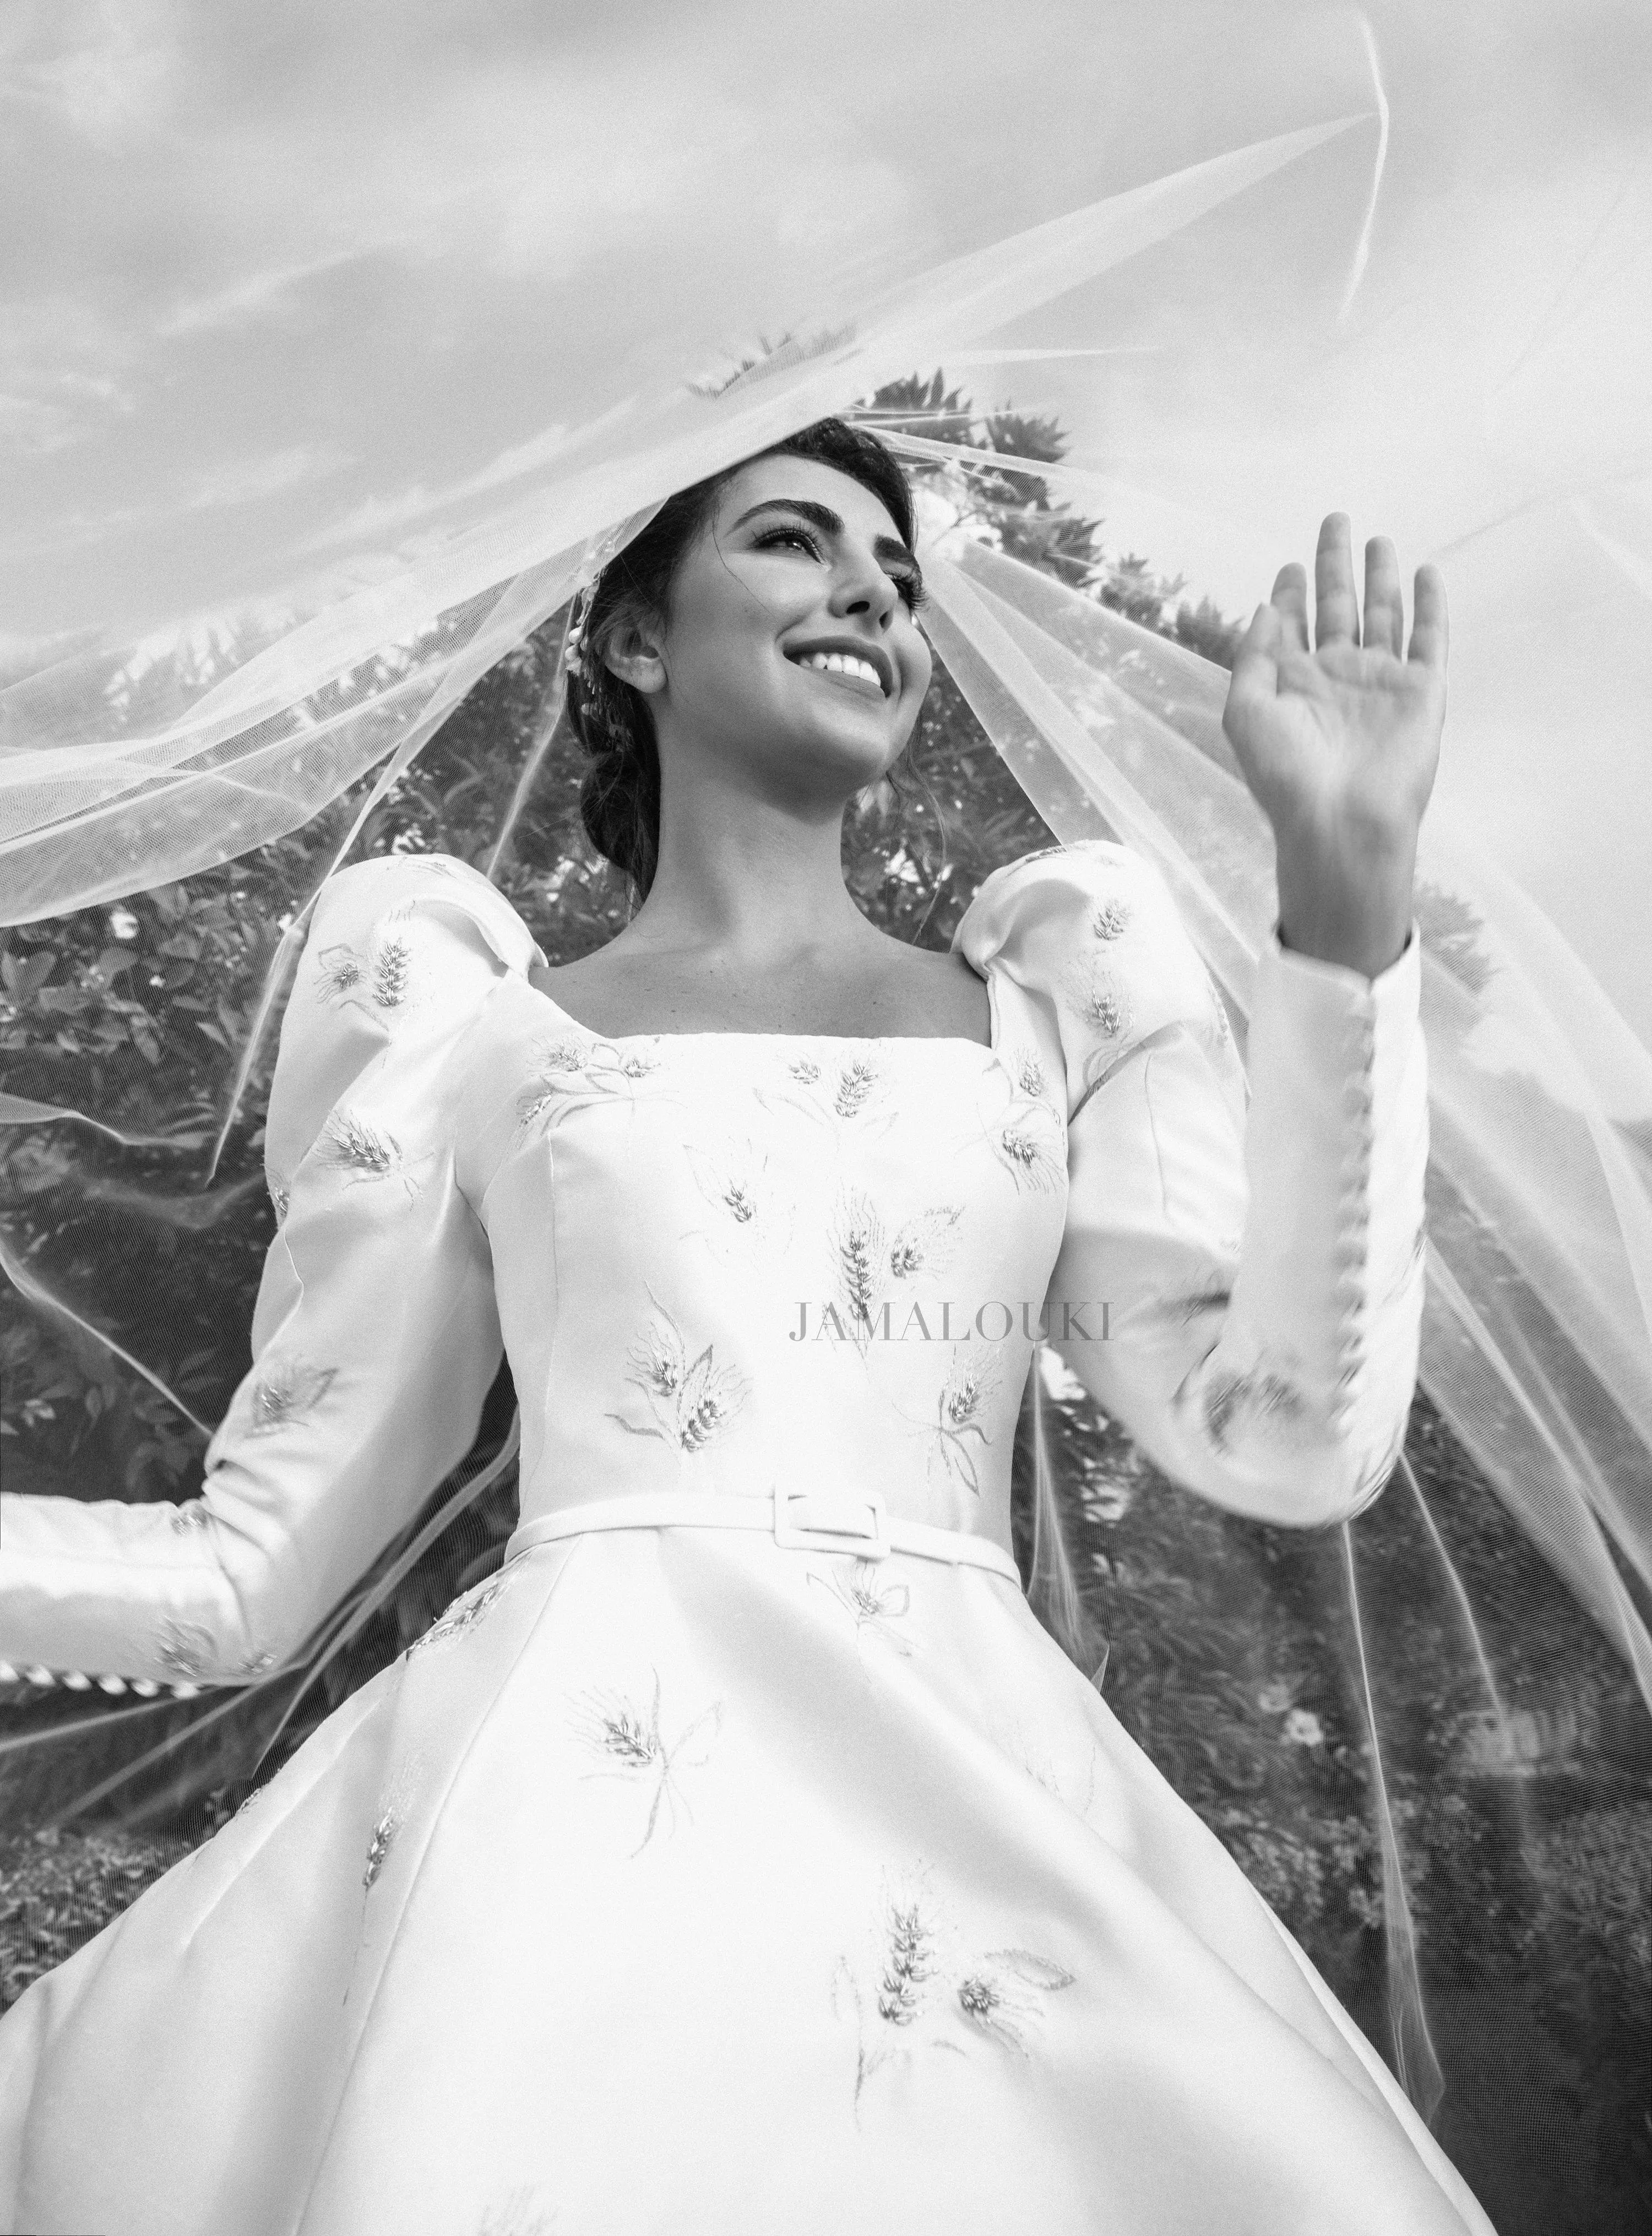 الصور الأولى والحصرية للعروس فاليري أبو شقرا على غلاف جمالكِ: إطلالة ملوكية استثنائية!